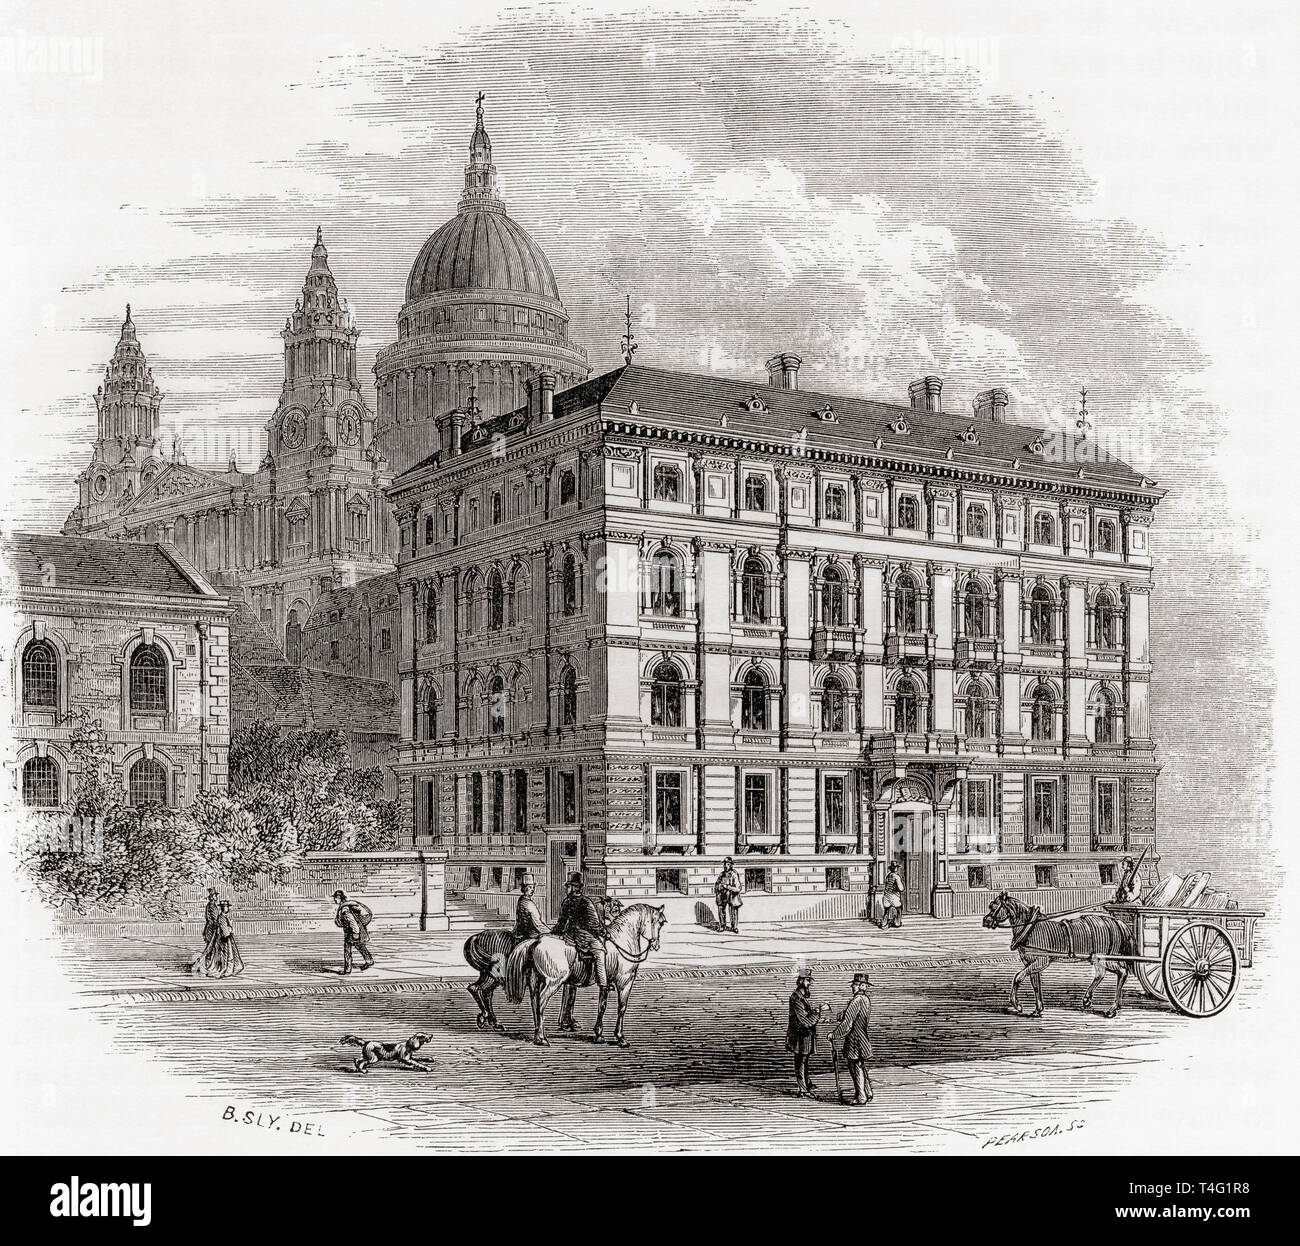 Las oficinas de la Sociedad Bíblica Británica y Extranjera, Queen Victoria Street, Londres, Inglaterra, visto aquí en el siglo XIX. Imágenes de Londres, publicado 1890 Foto de stock